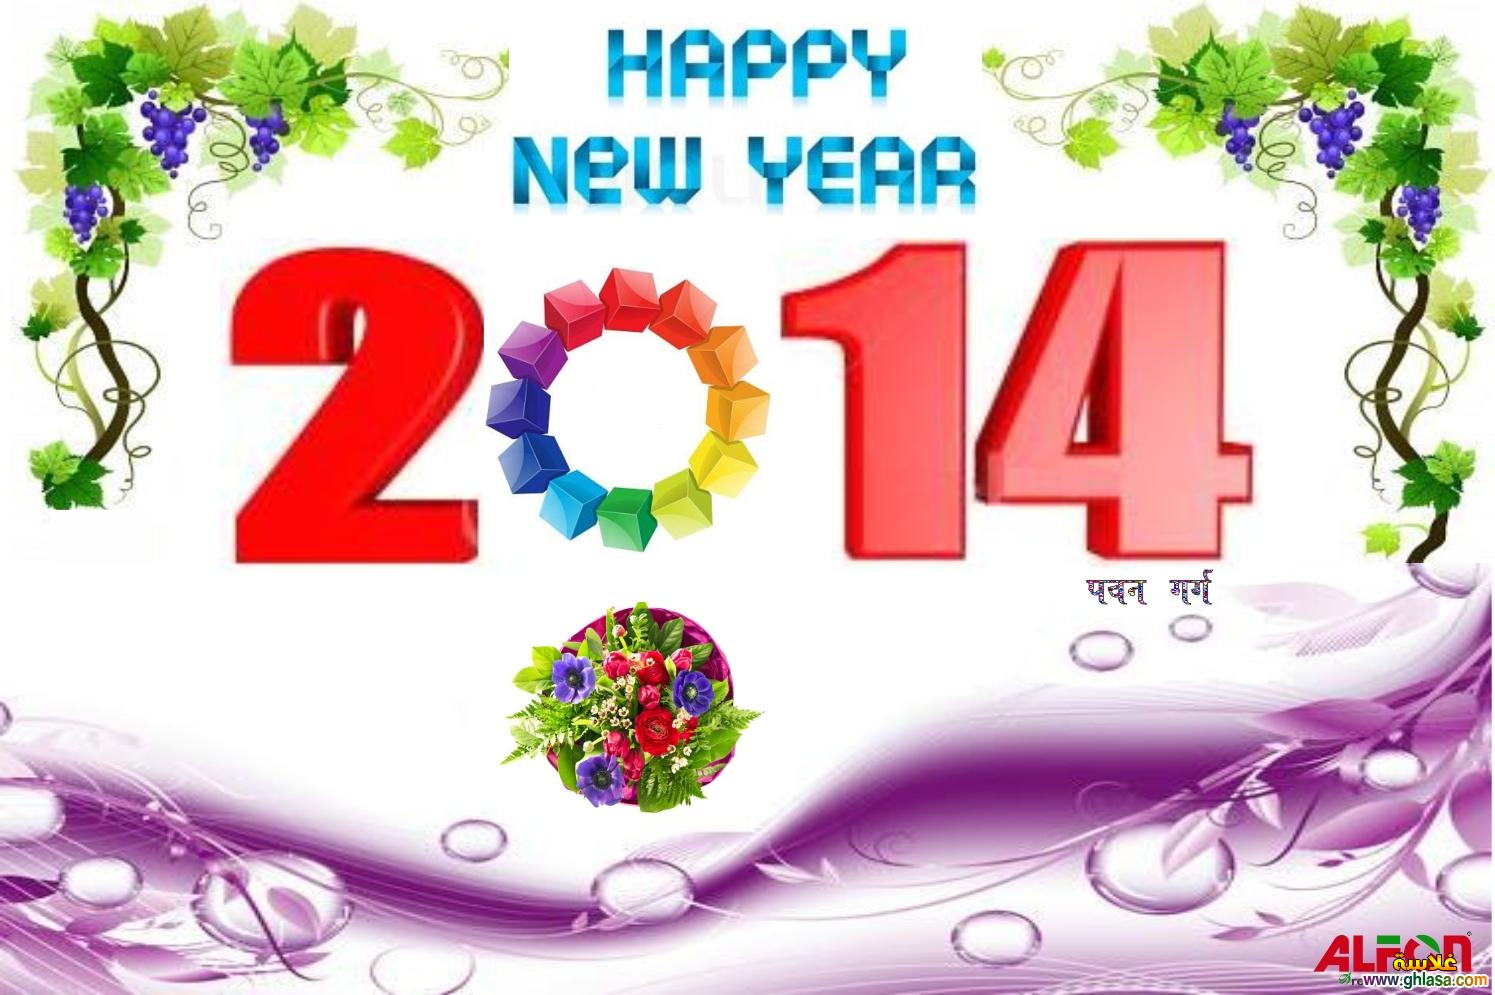    2025    2025    2025 happy-new-year-2025- ghlasa1377749158565.jpg